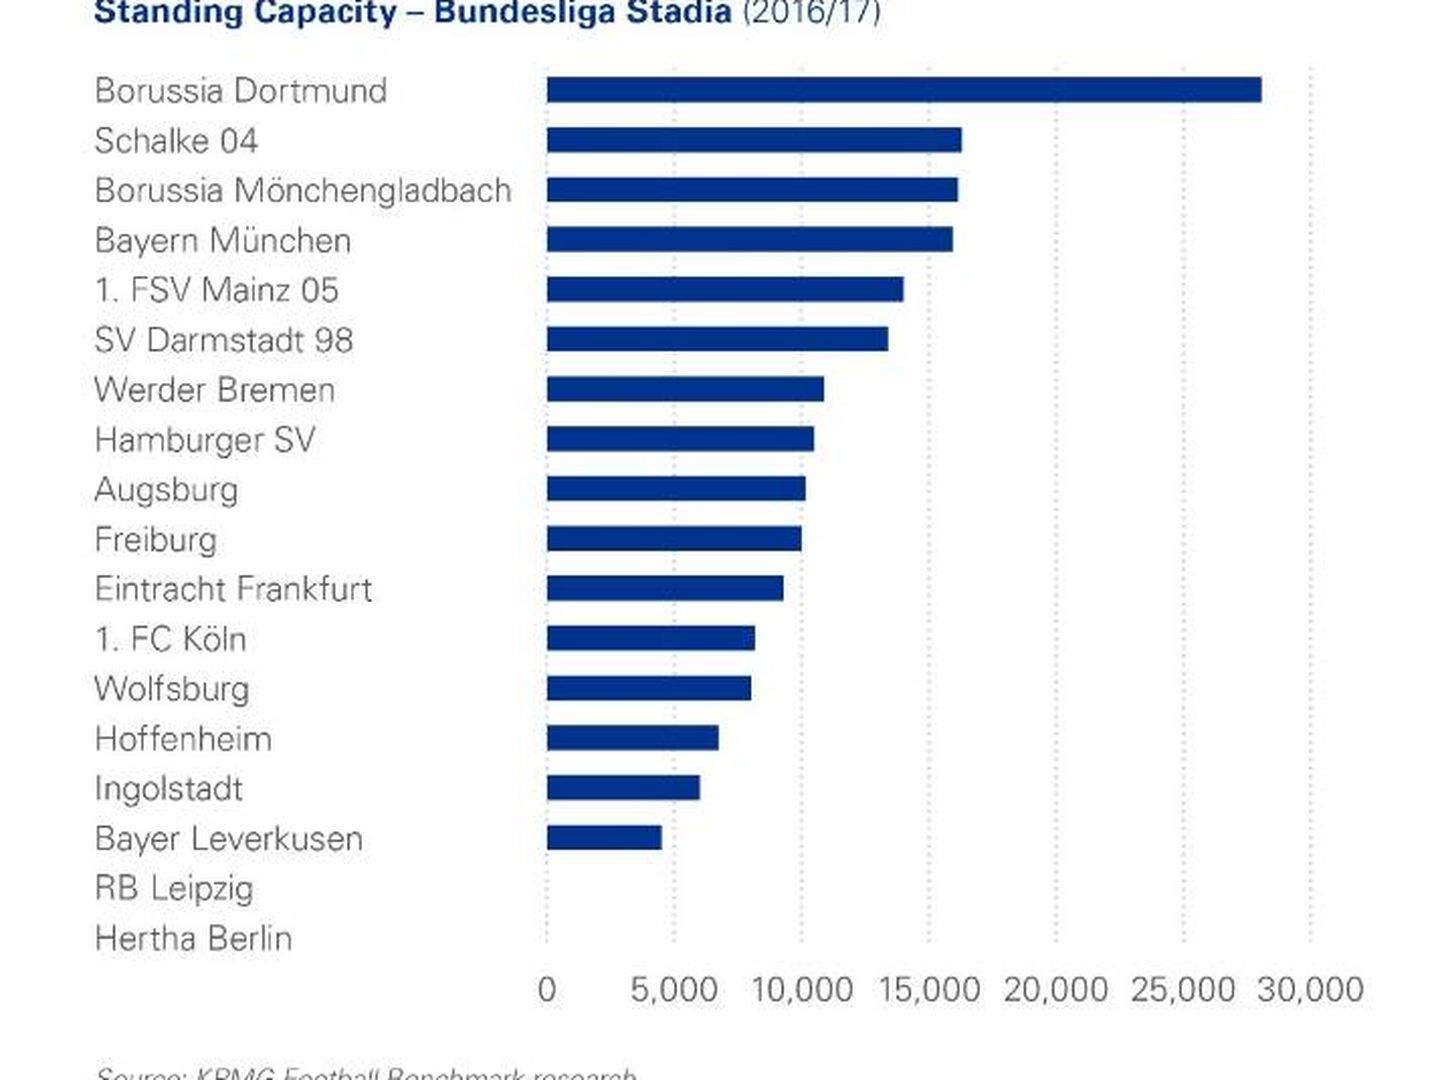 La capacidad de las gradas de pie de los estadios de la Bundesliga. (Fuente: Making a stand: The case for new terracing/KPMG)